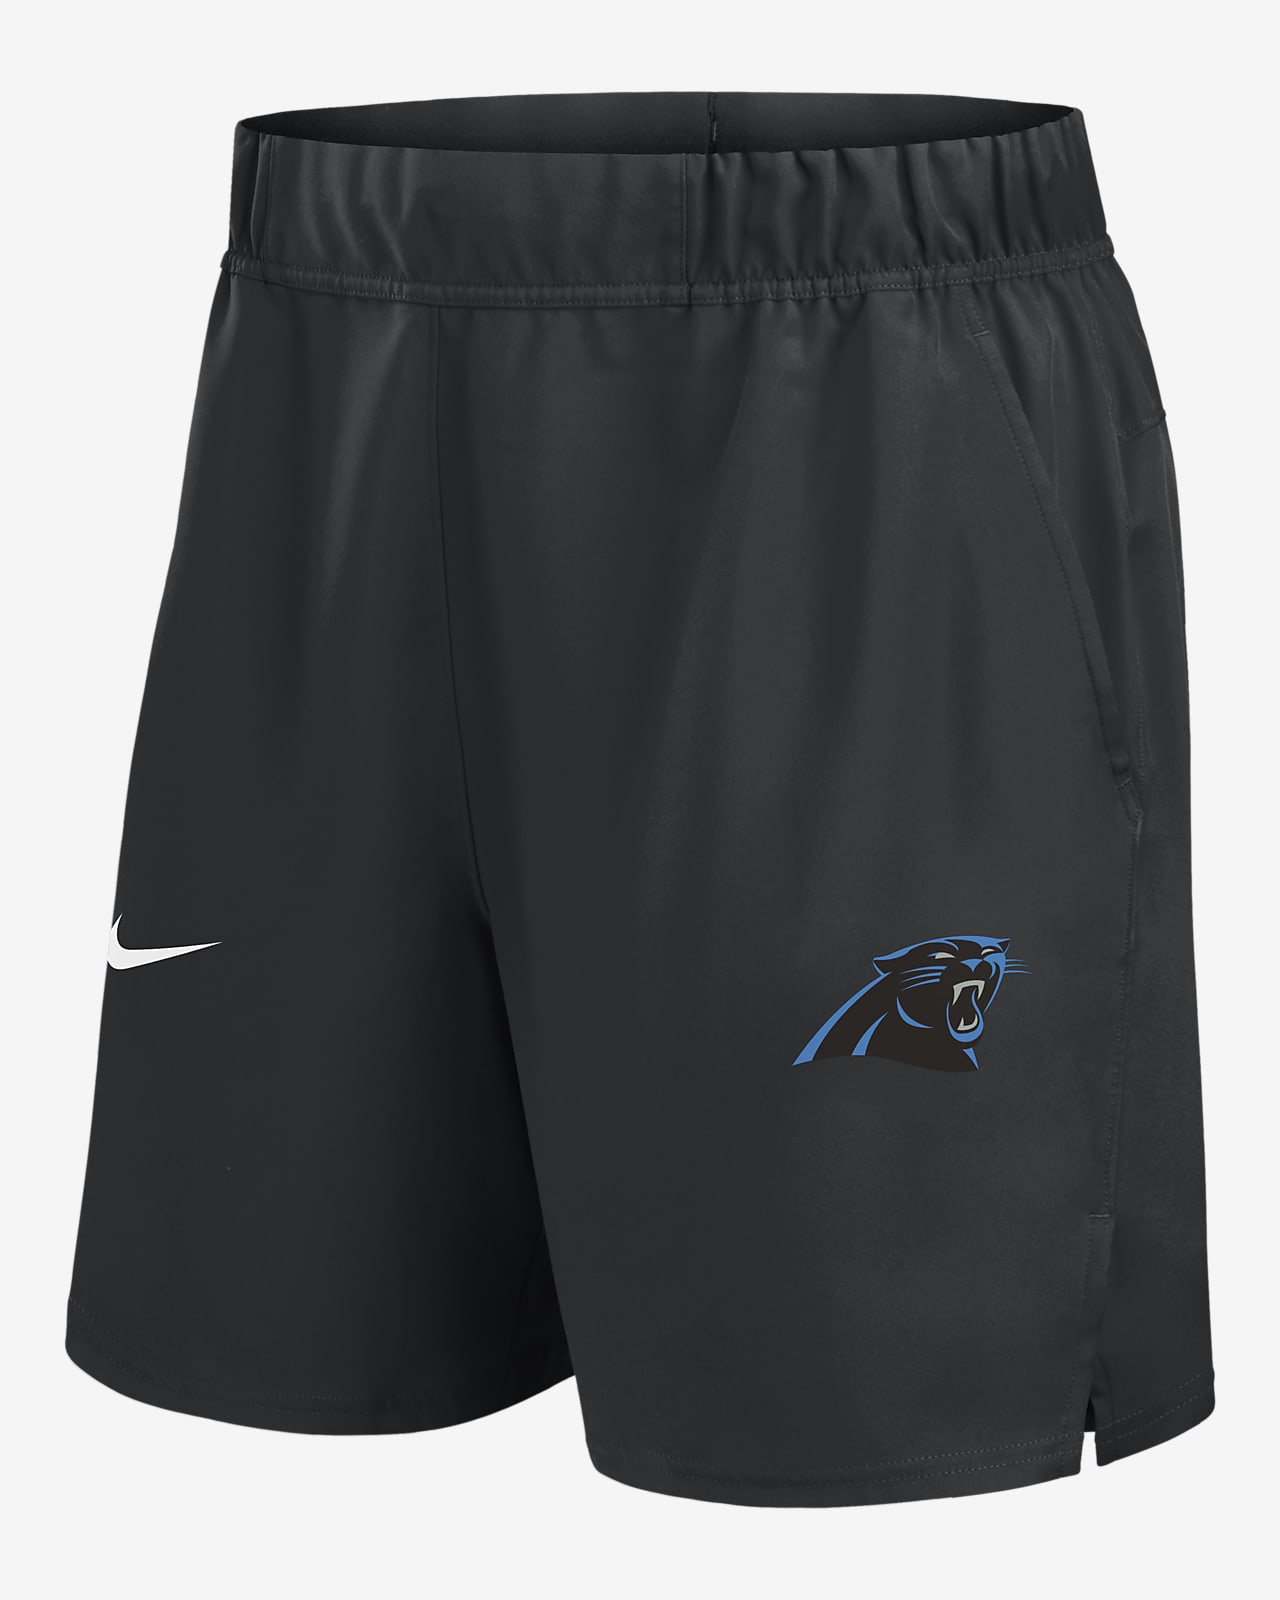 Shorts Nike Dri-FIT de la NFL para hombre Carolina Panthers Blitz Victory